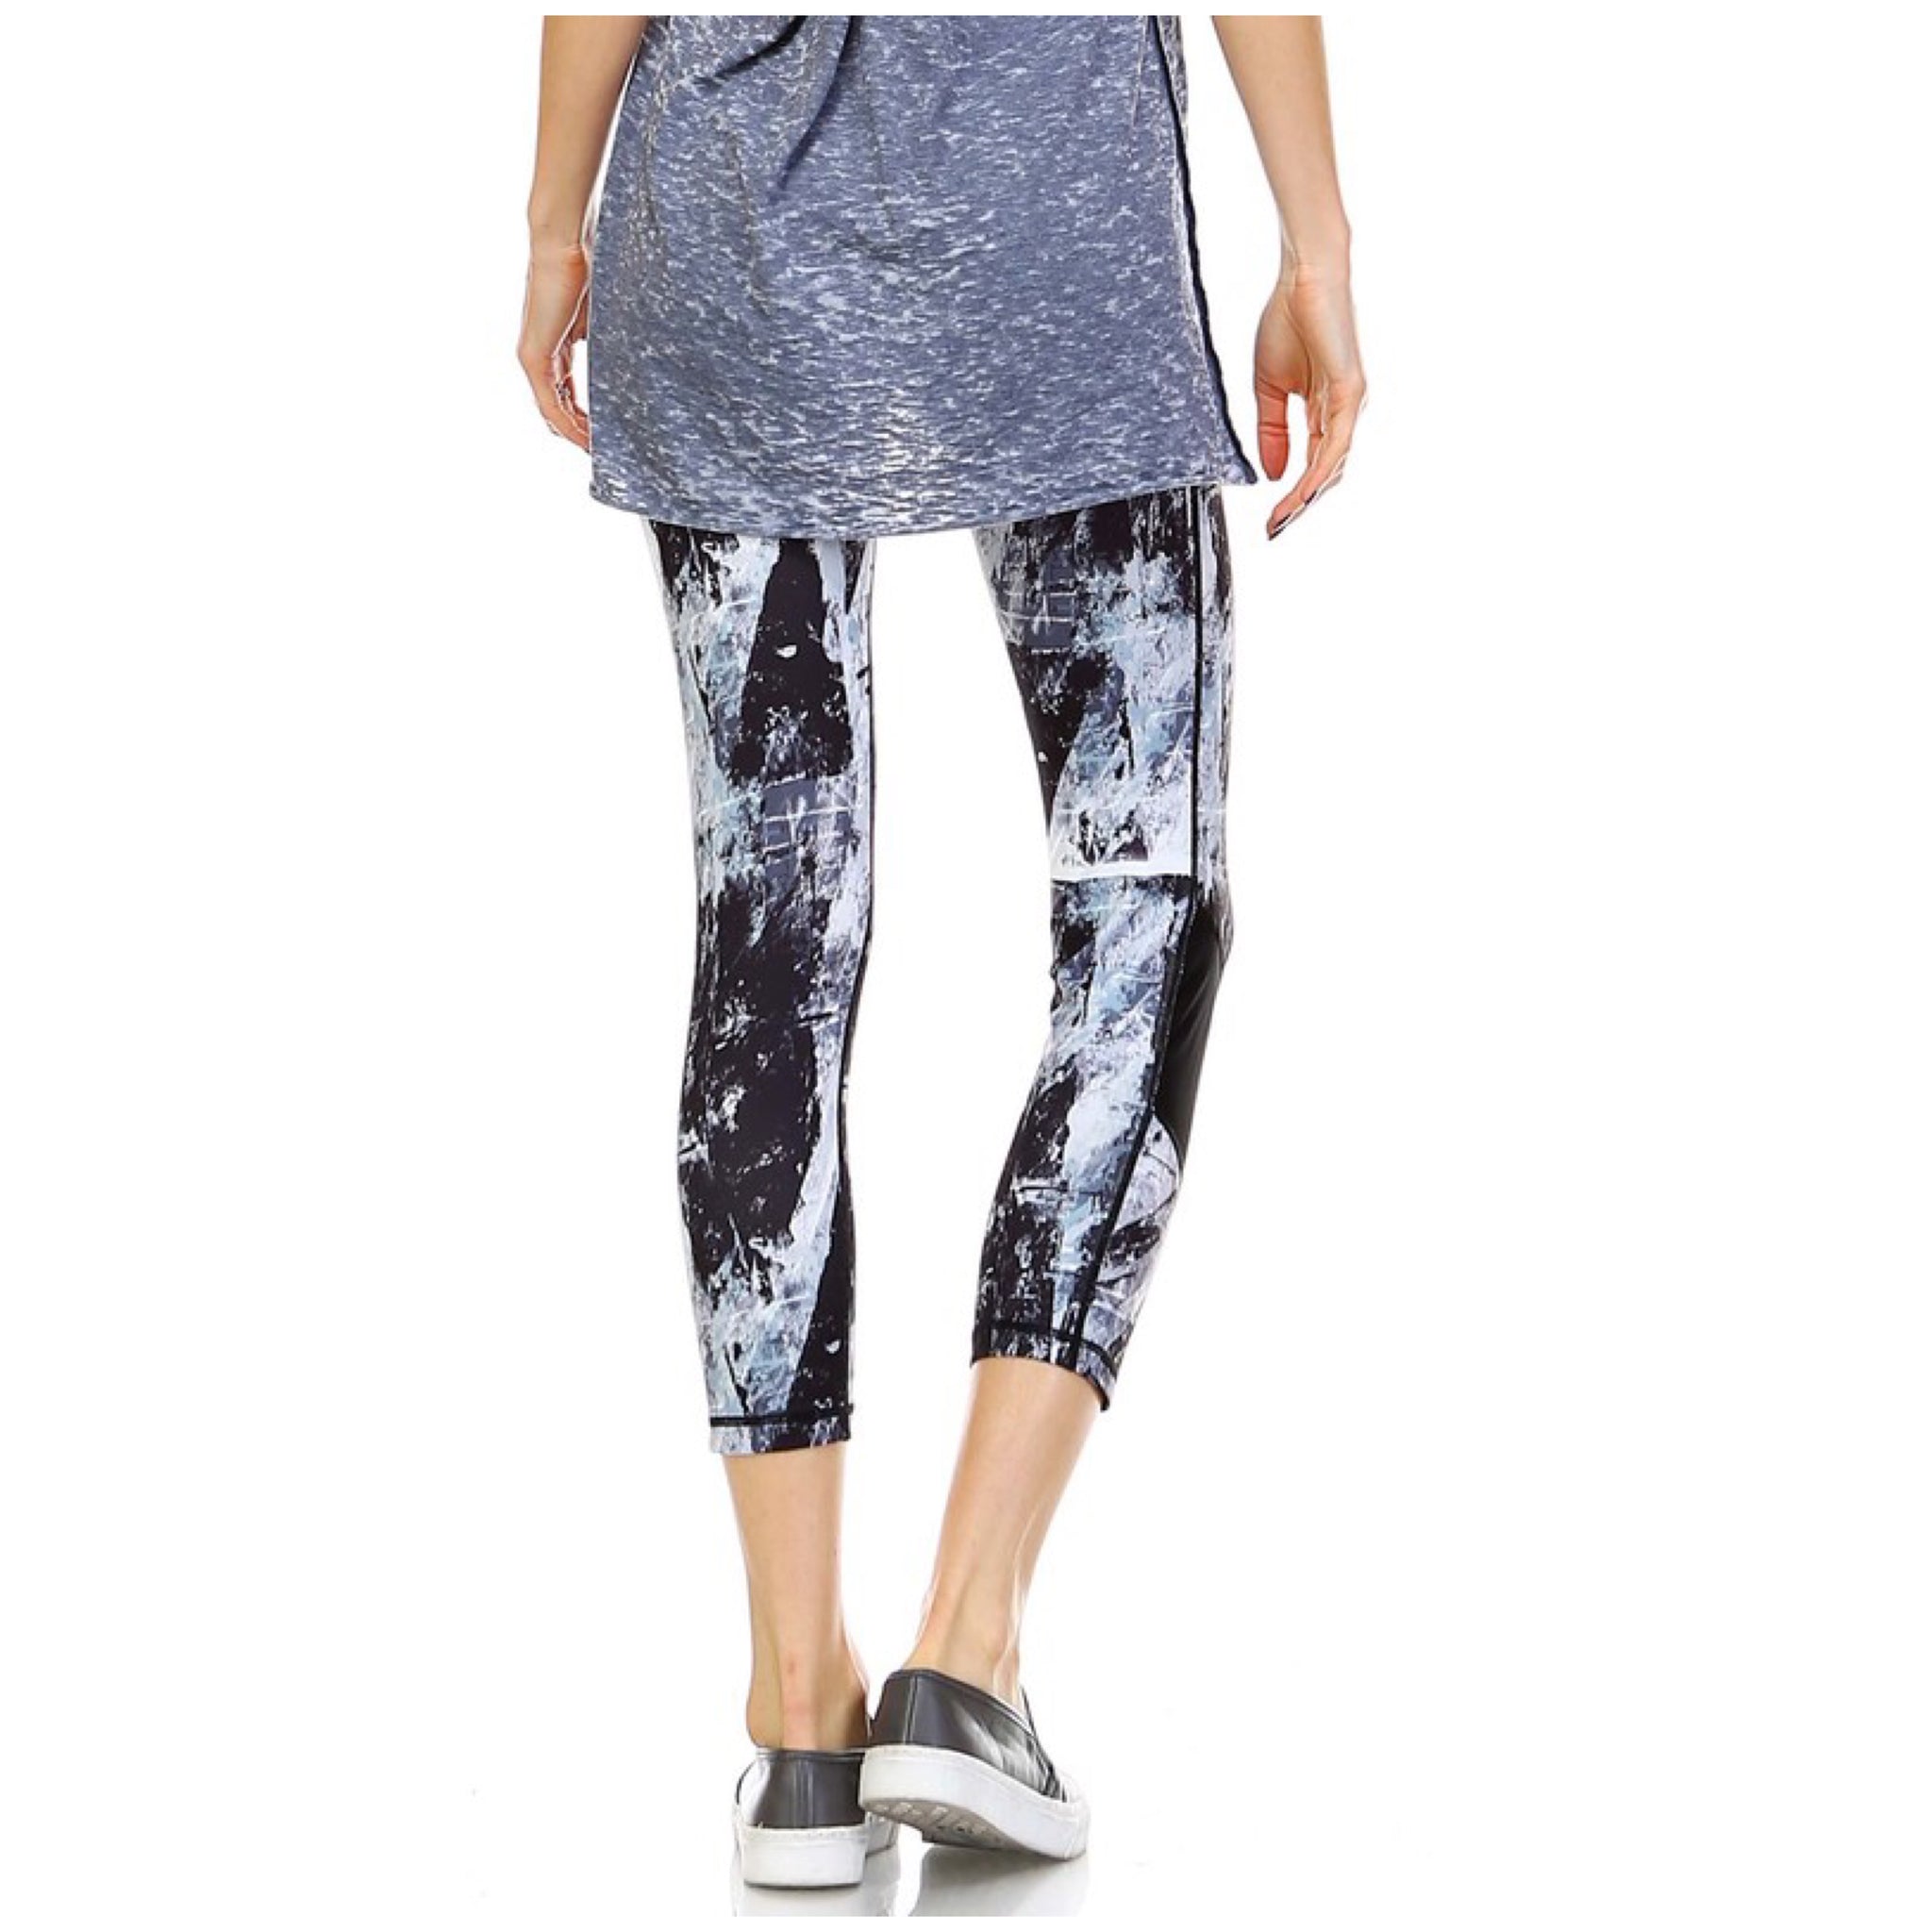 Paint Print Leggings Stretch Yoga Lounge Capri Pants Gym Workout Black Blue